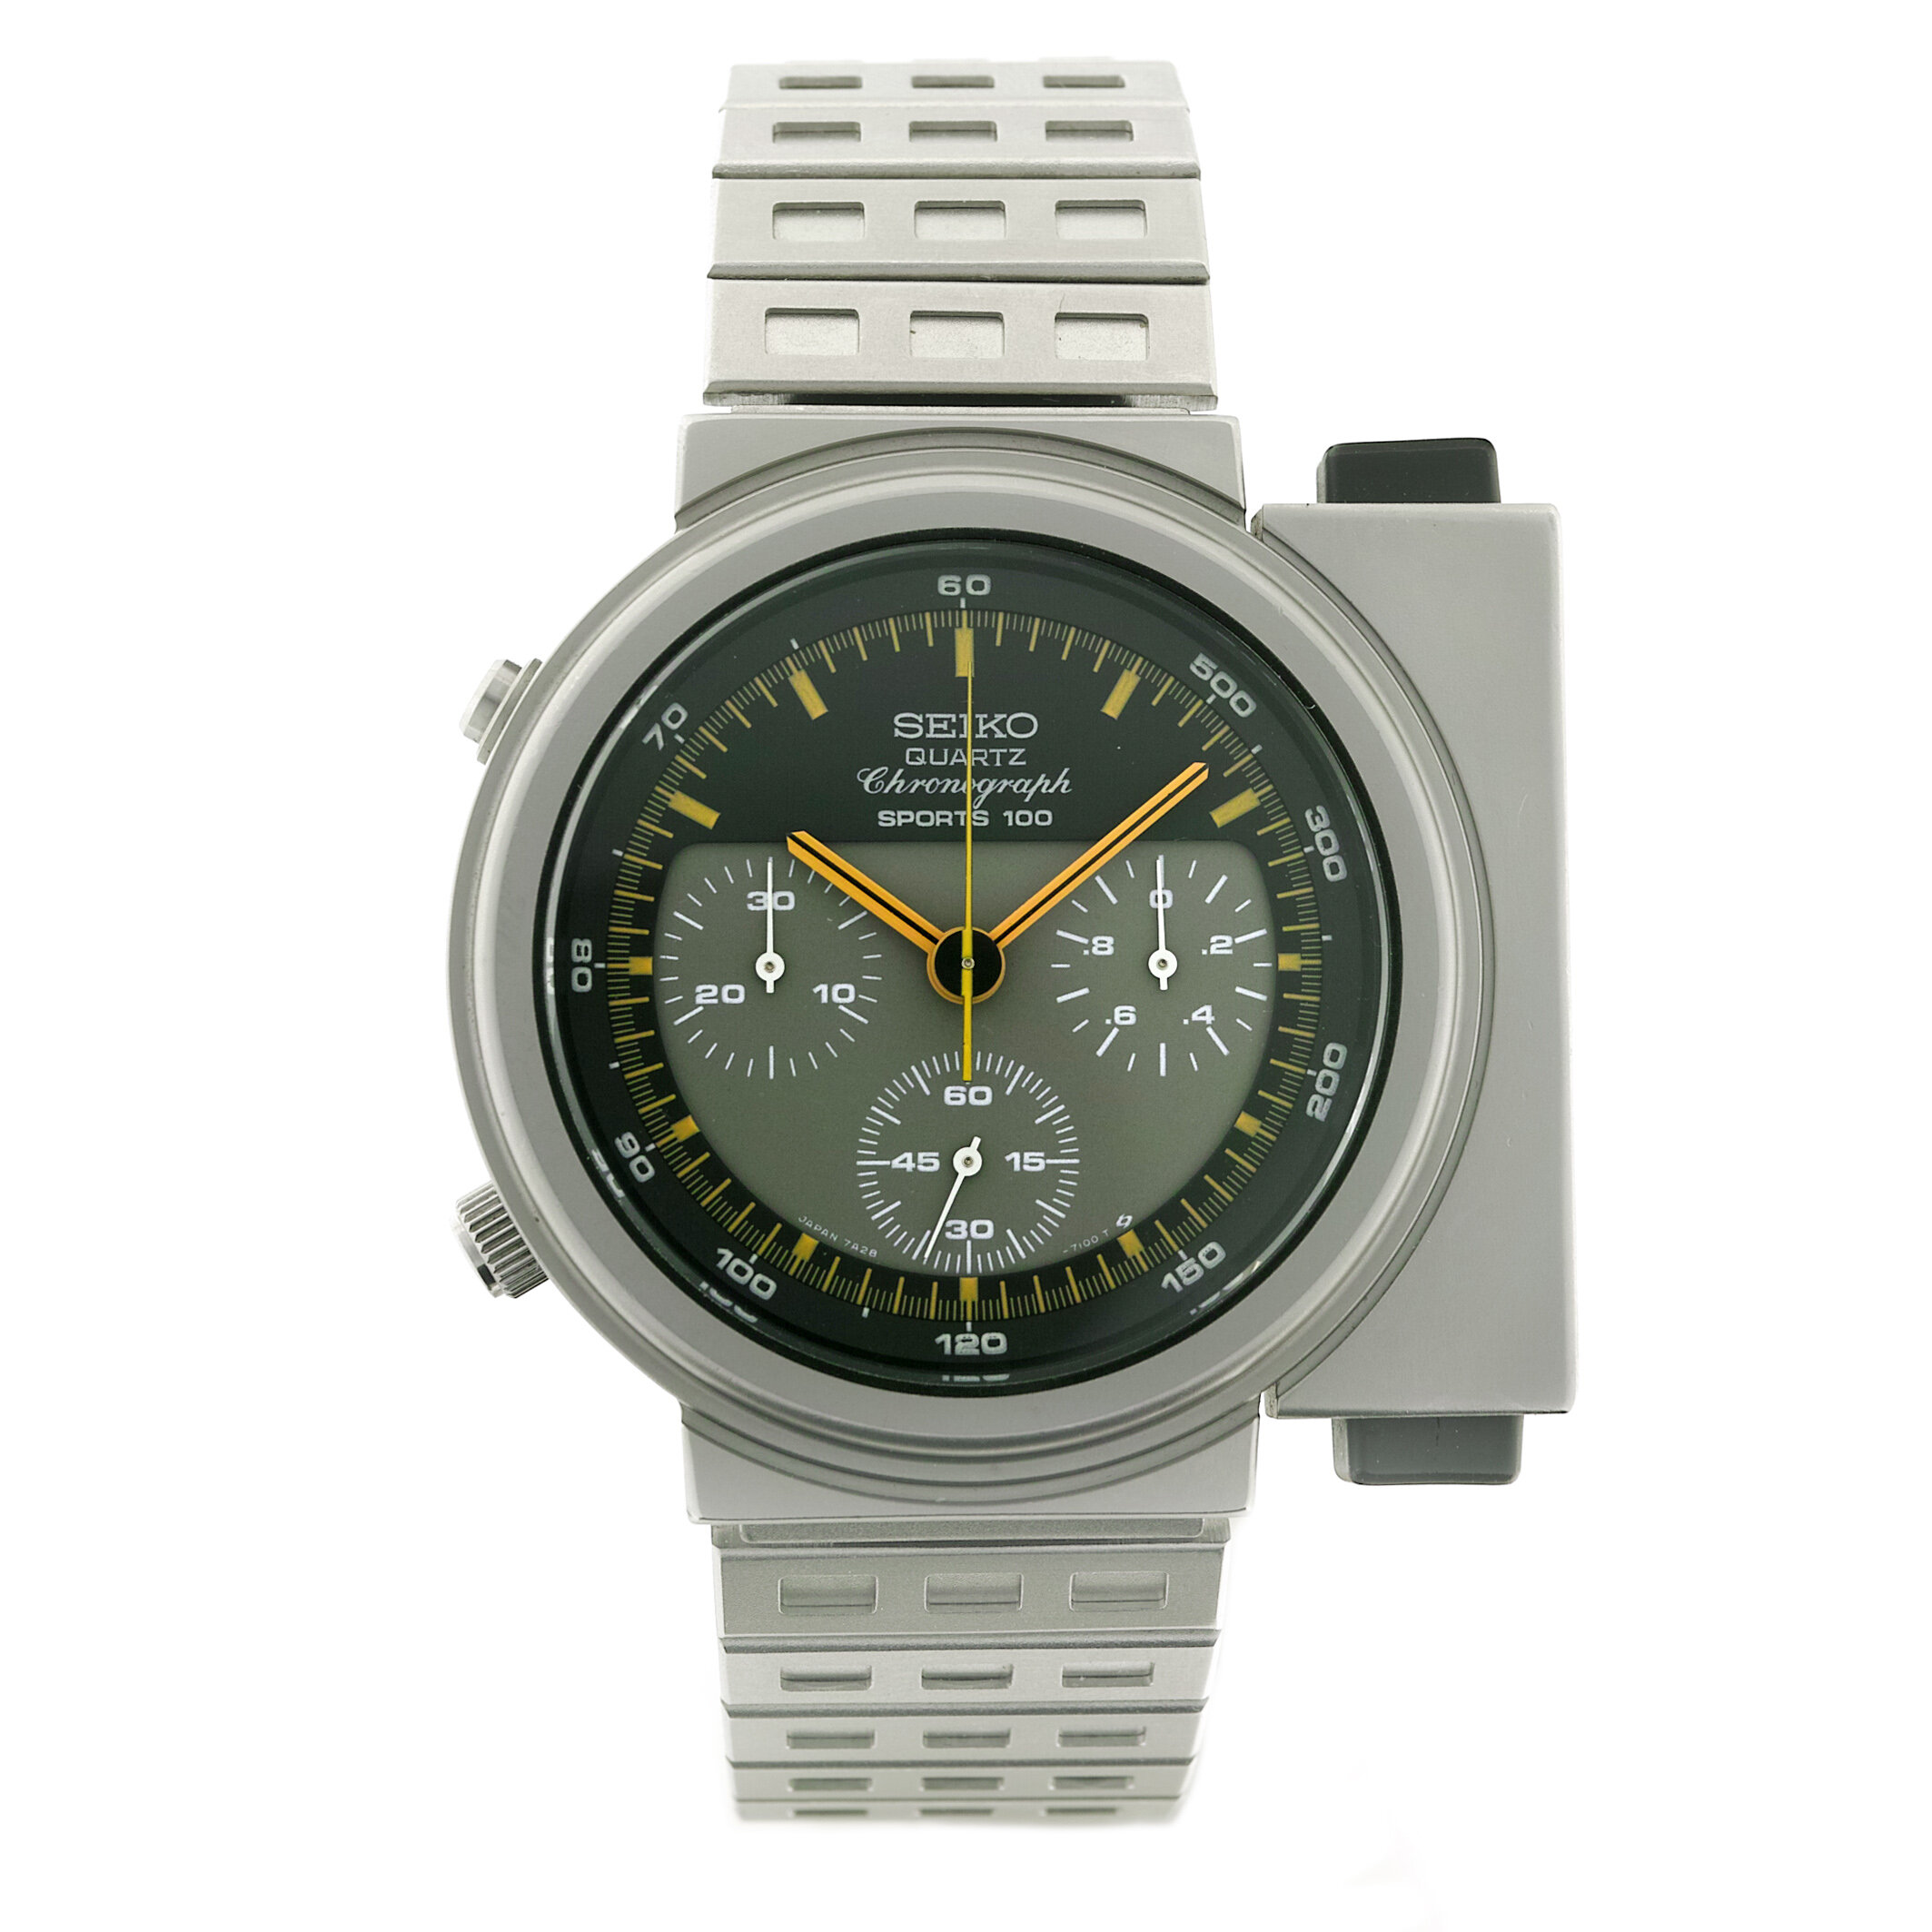 THE SEIKO GIUGIARO 7A28-7000 - Montres Publiques - The vintage watch  magazine